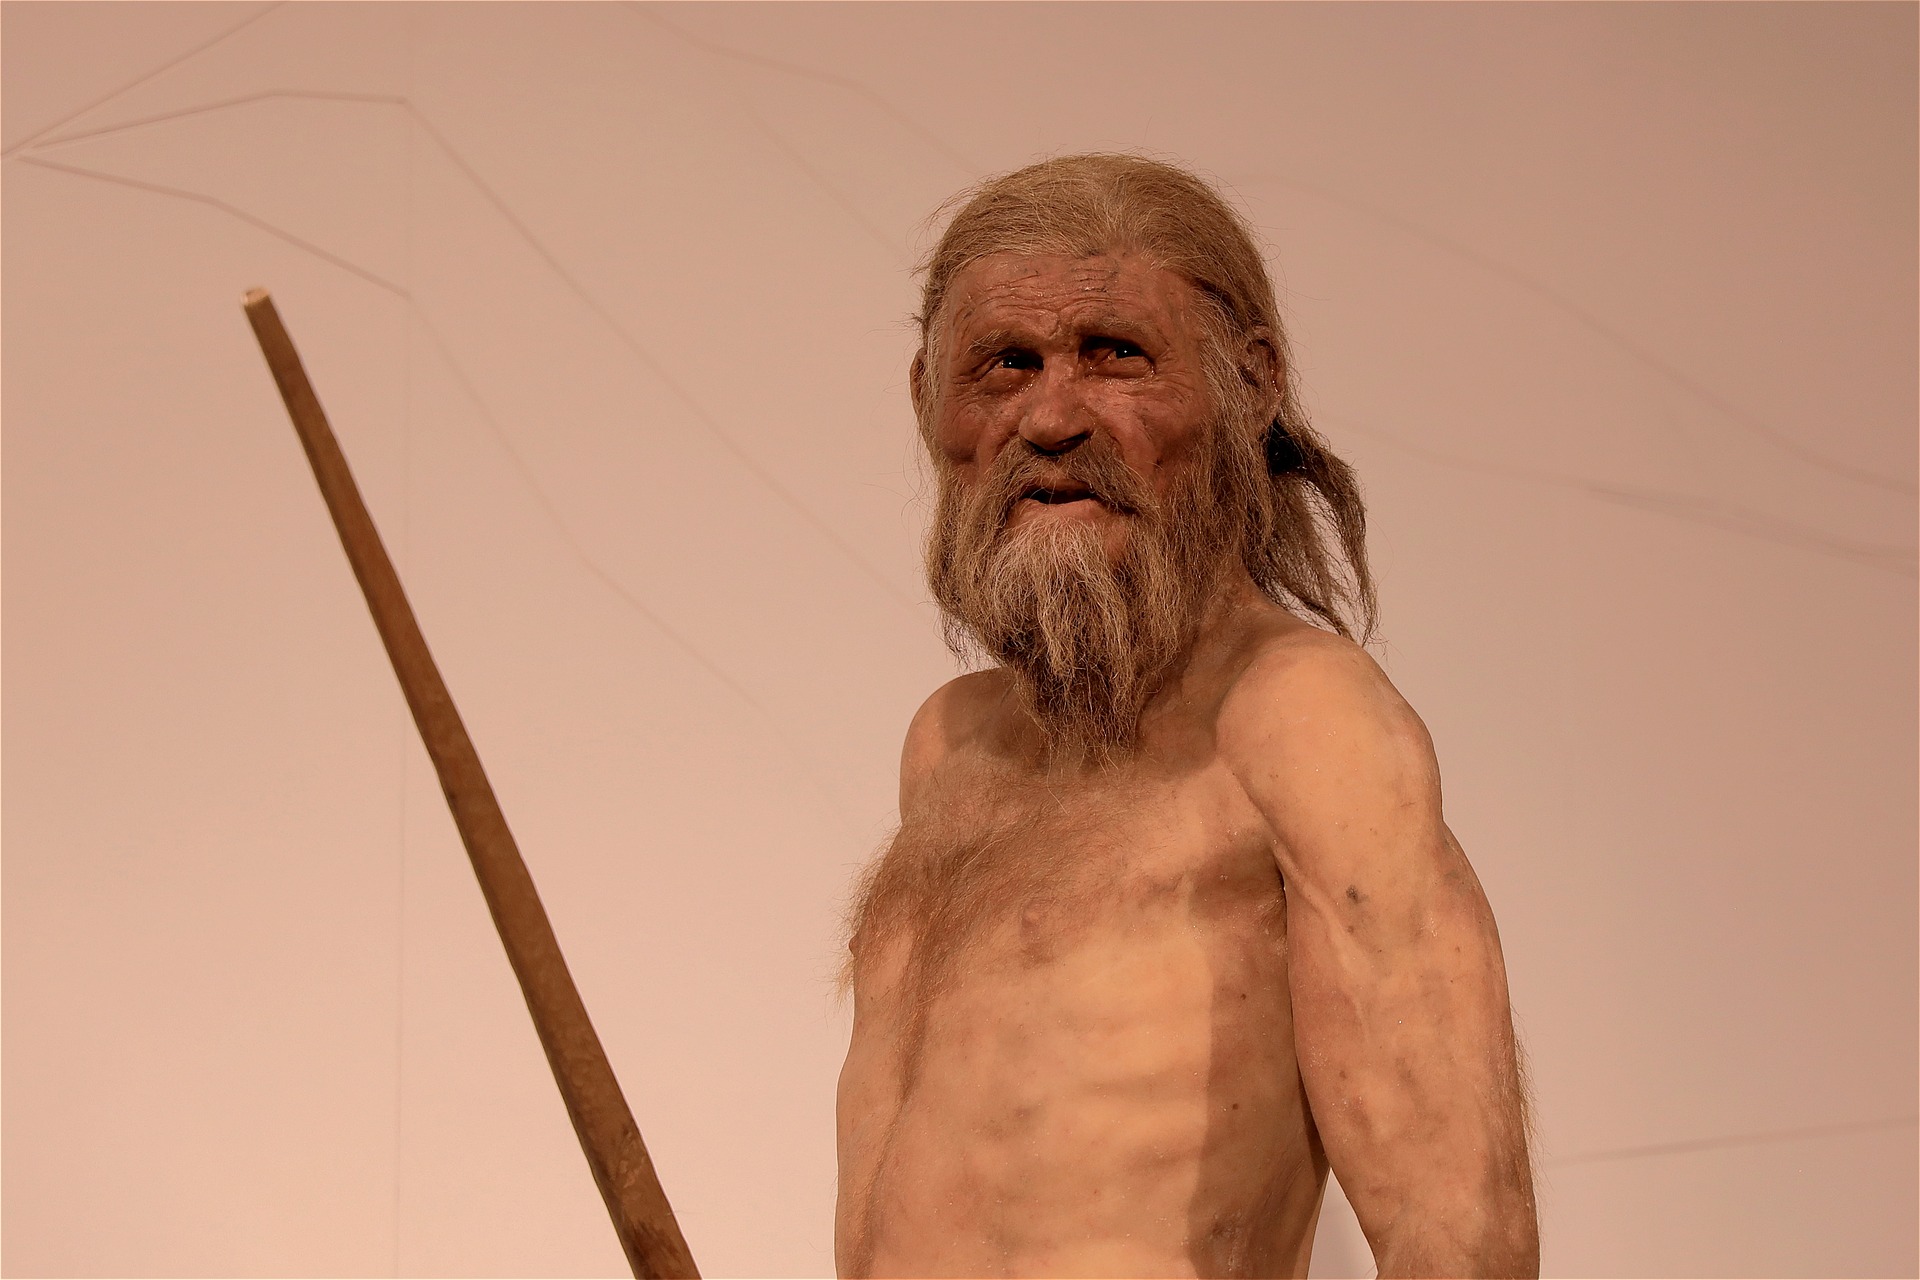 Prehistorische mensen die bij de Almonda grotten woonden, hadden een heel ander leven dan Neanderthalers. Ze moesten zich aanpassen aan een groeiende bevolking en plaats maken. Ook toen al.